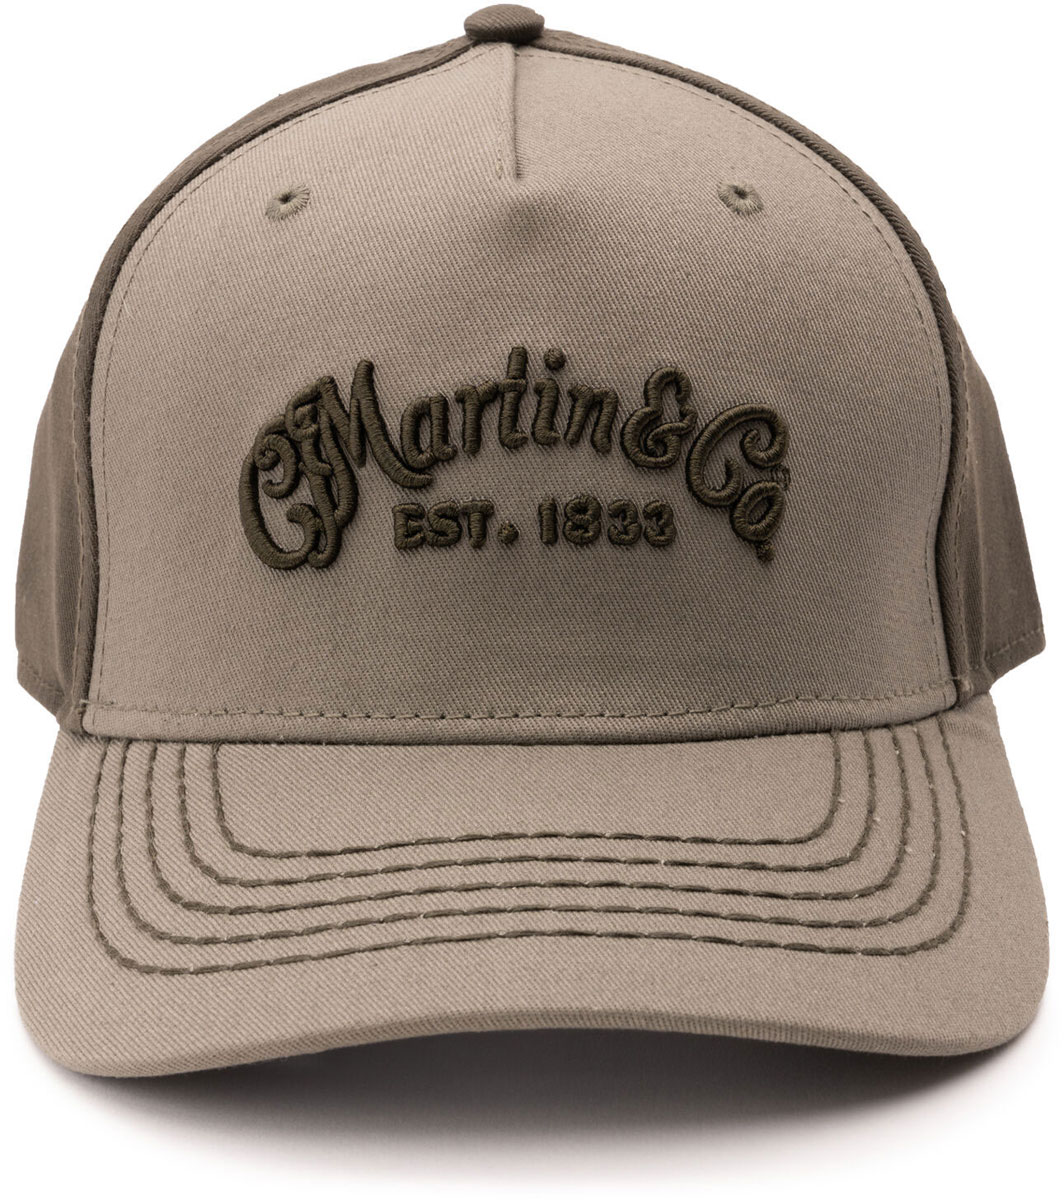 MARTIN & CO CAP,BALLCAP,1833/CFMLOGO,ARMY/OLIVE